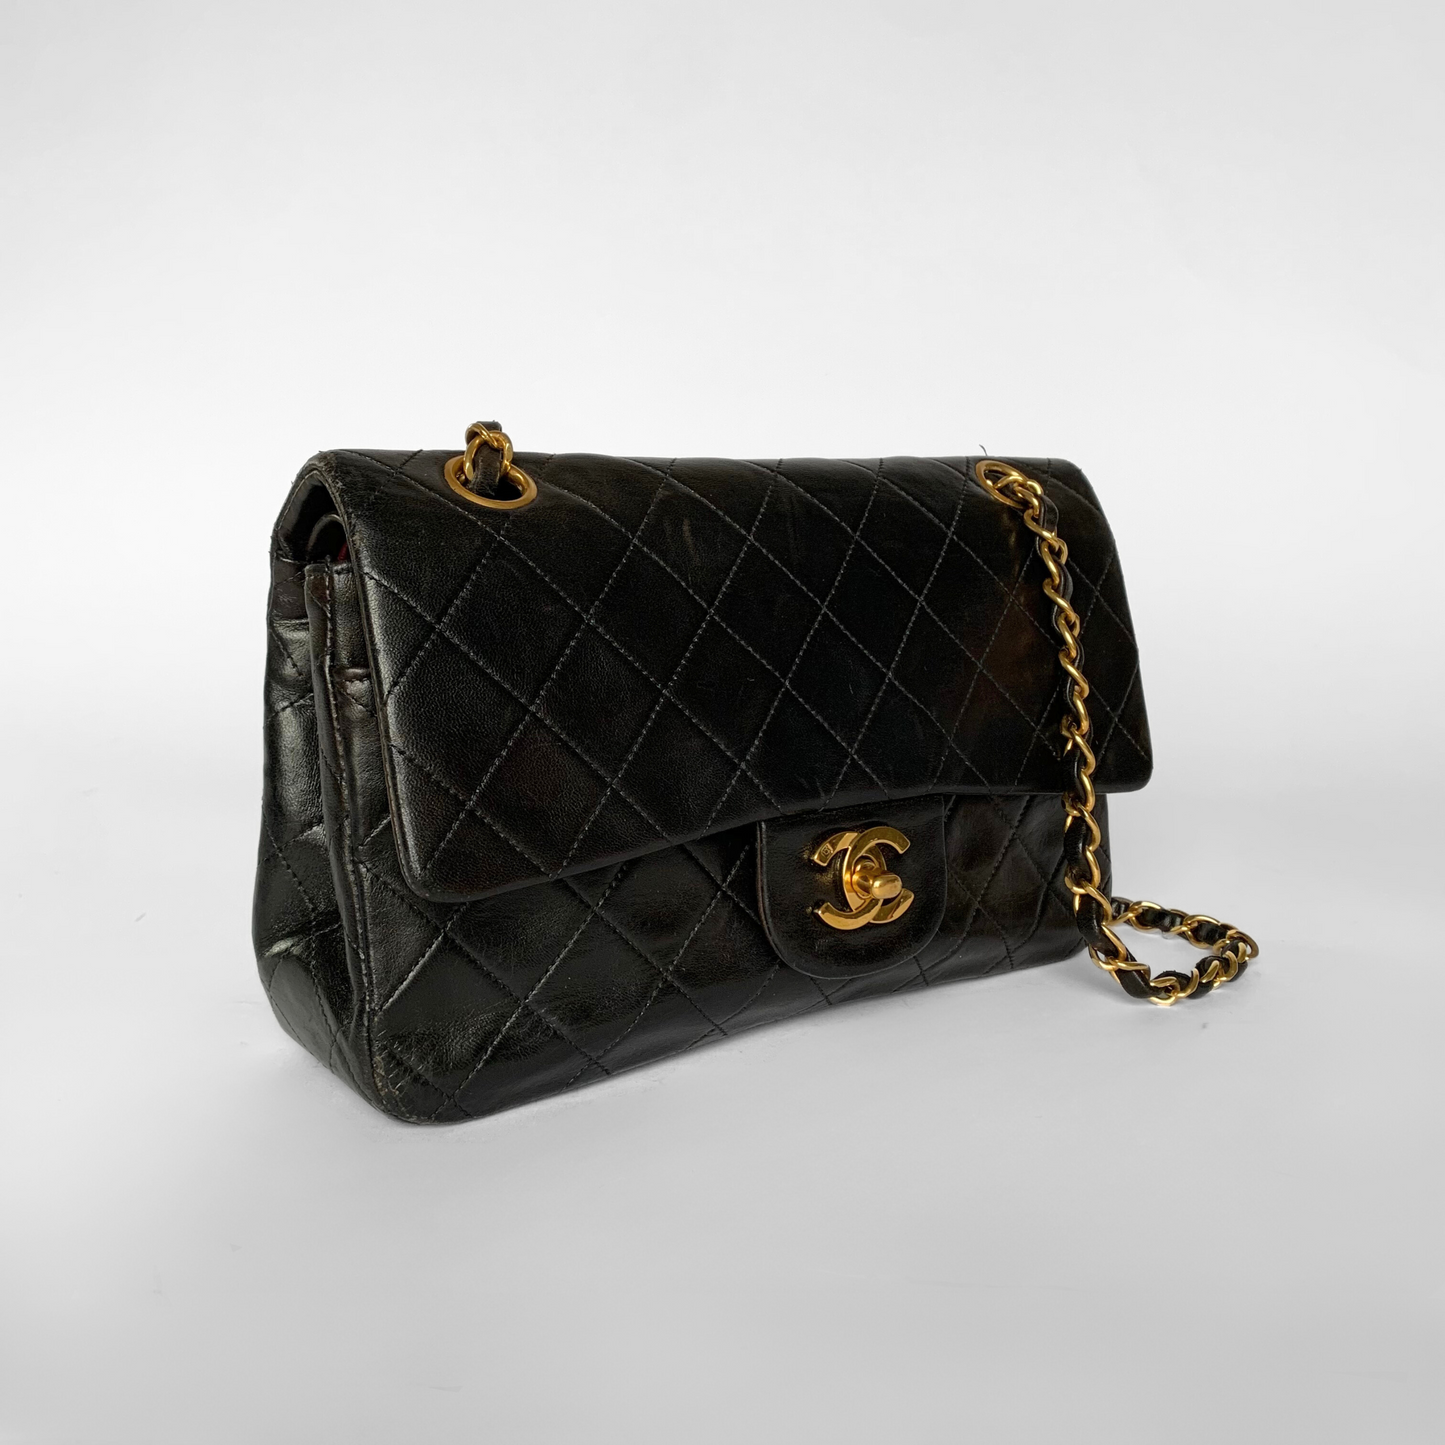 Chanel Chanel Klassisches kleines Lammleder mit doppelter Klappe - Handtaschen - Etoile Luxury Vintage